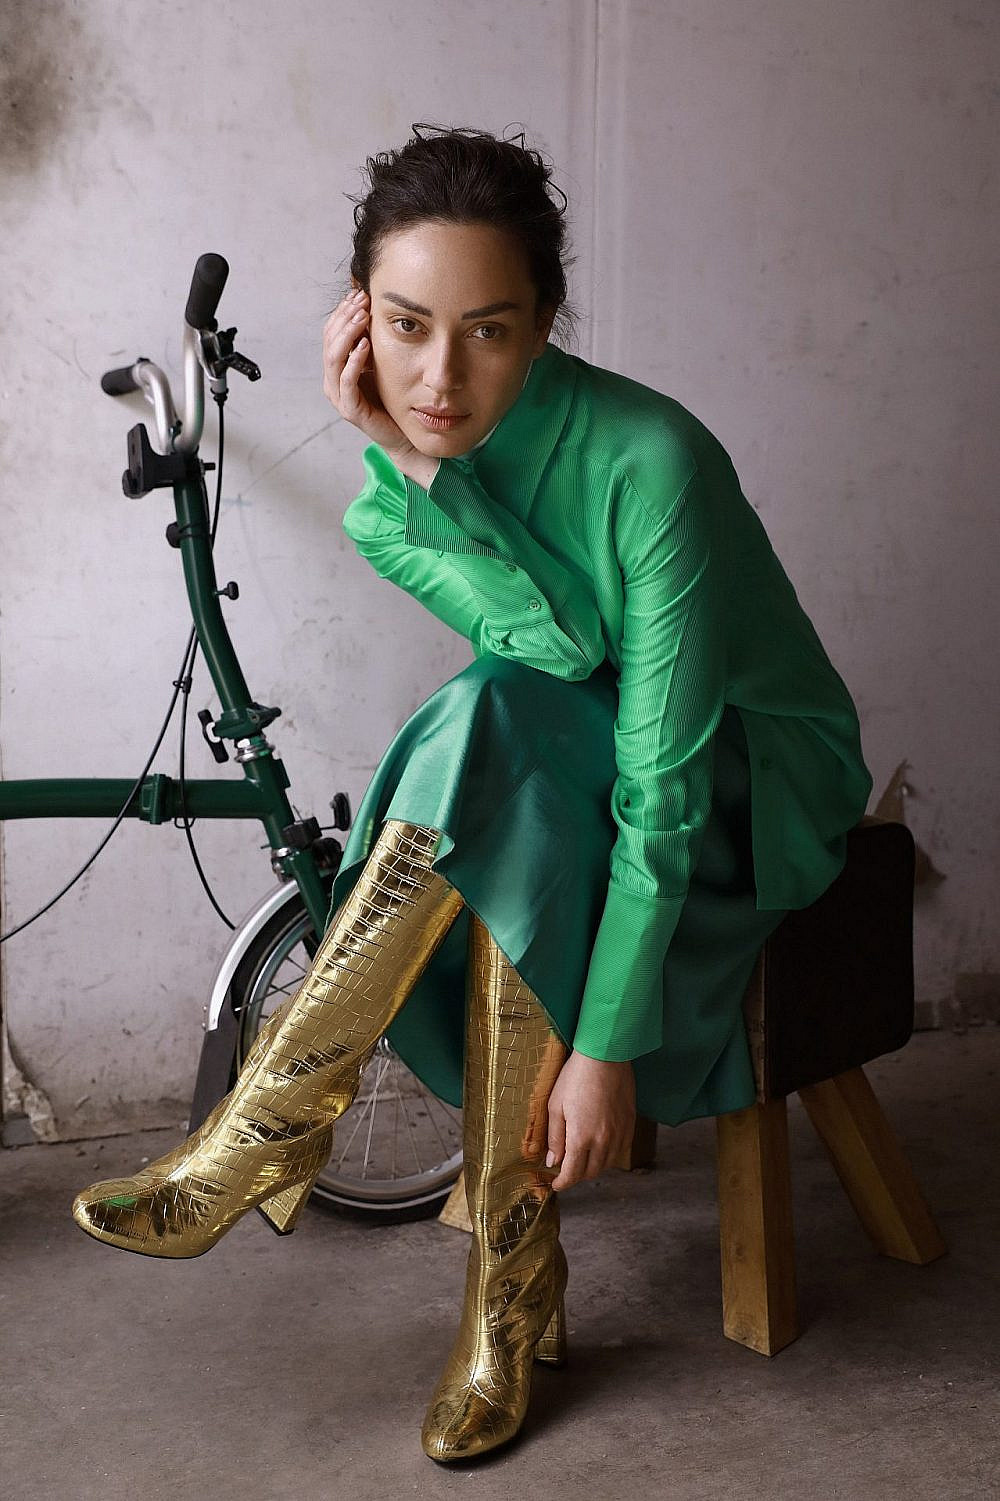 אנה ארונוב | צילום: טל עבודי, חולצה וחצאית: עמנואל, מגפיים: זארה